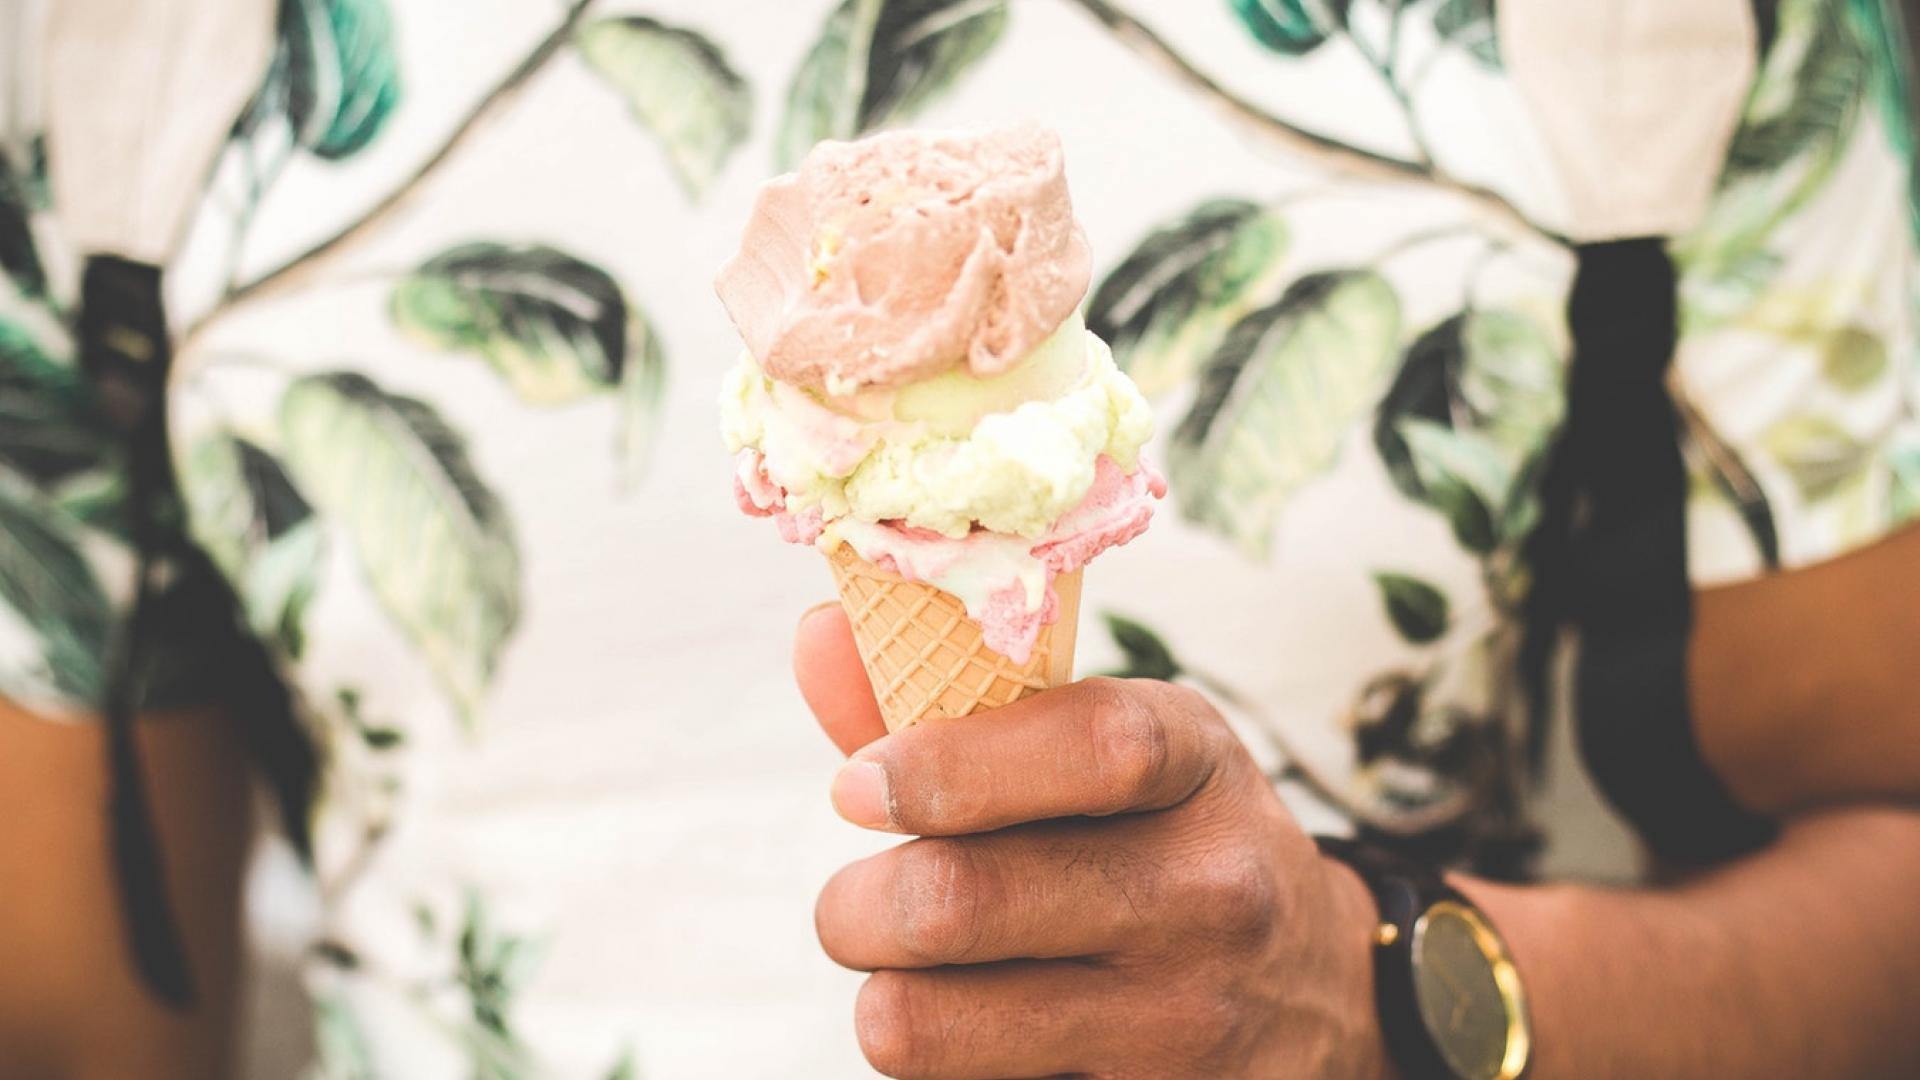 Where can you find original ice cream in Paris?